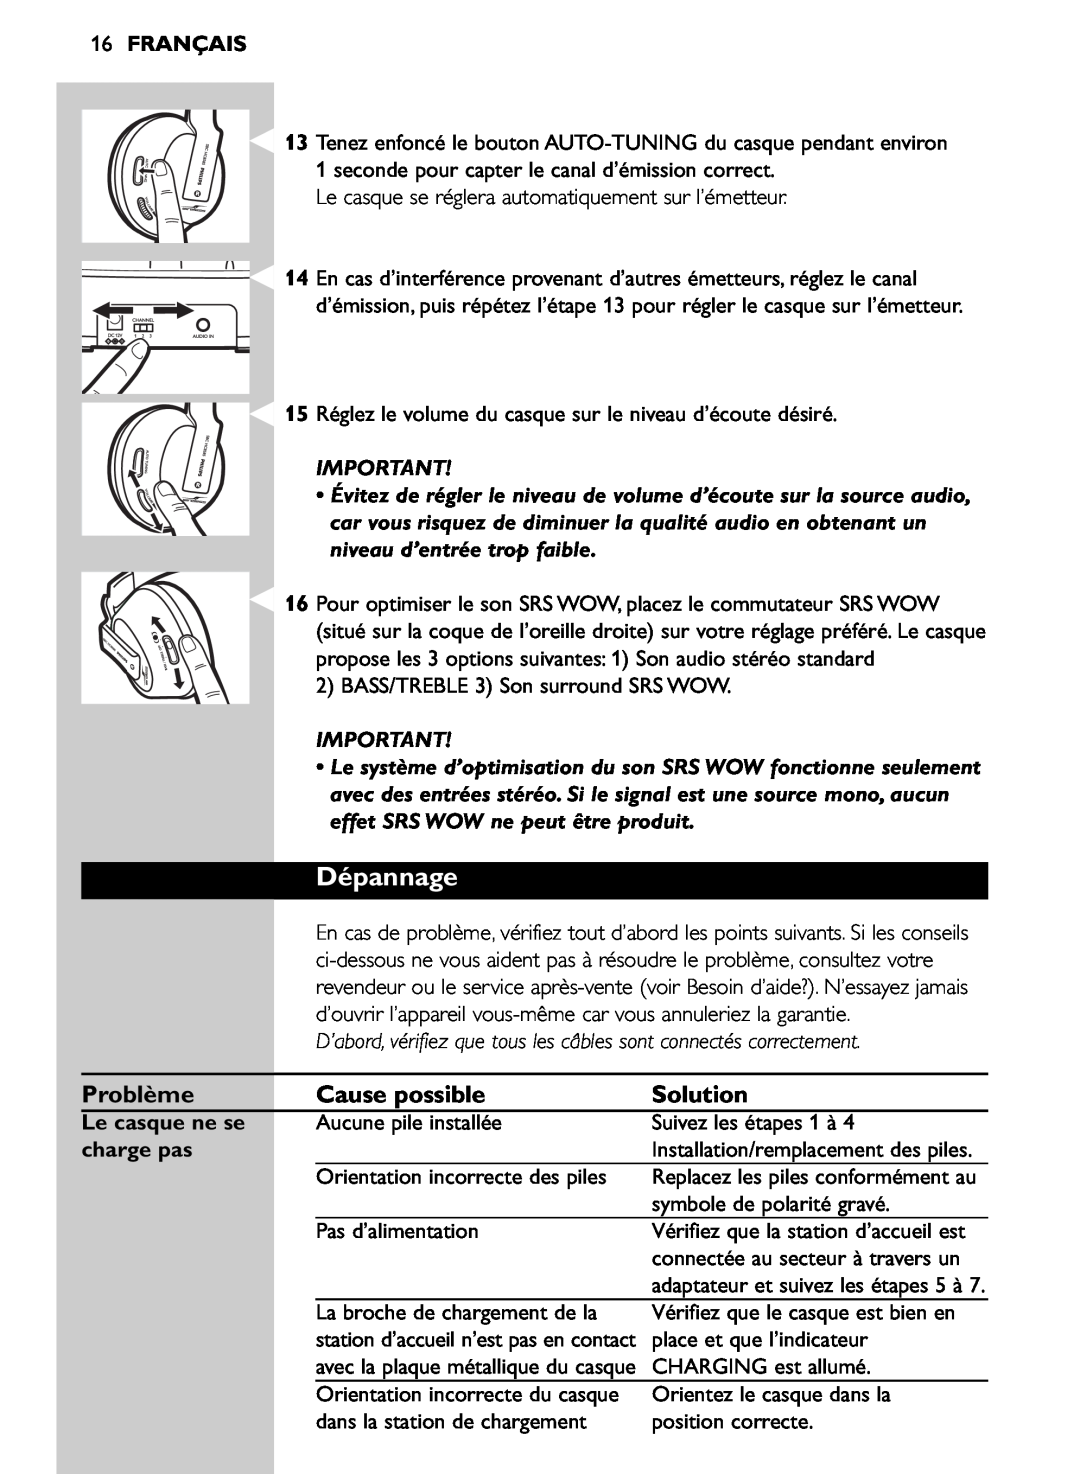 Philips SHC8585/00 manual Dépannage, Problème, Cause possible, 16FRANÇAIS, Le casque ne se, charge pas, Solution 